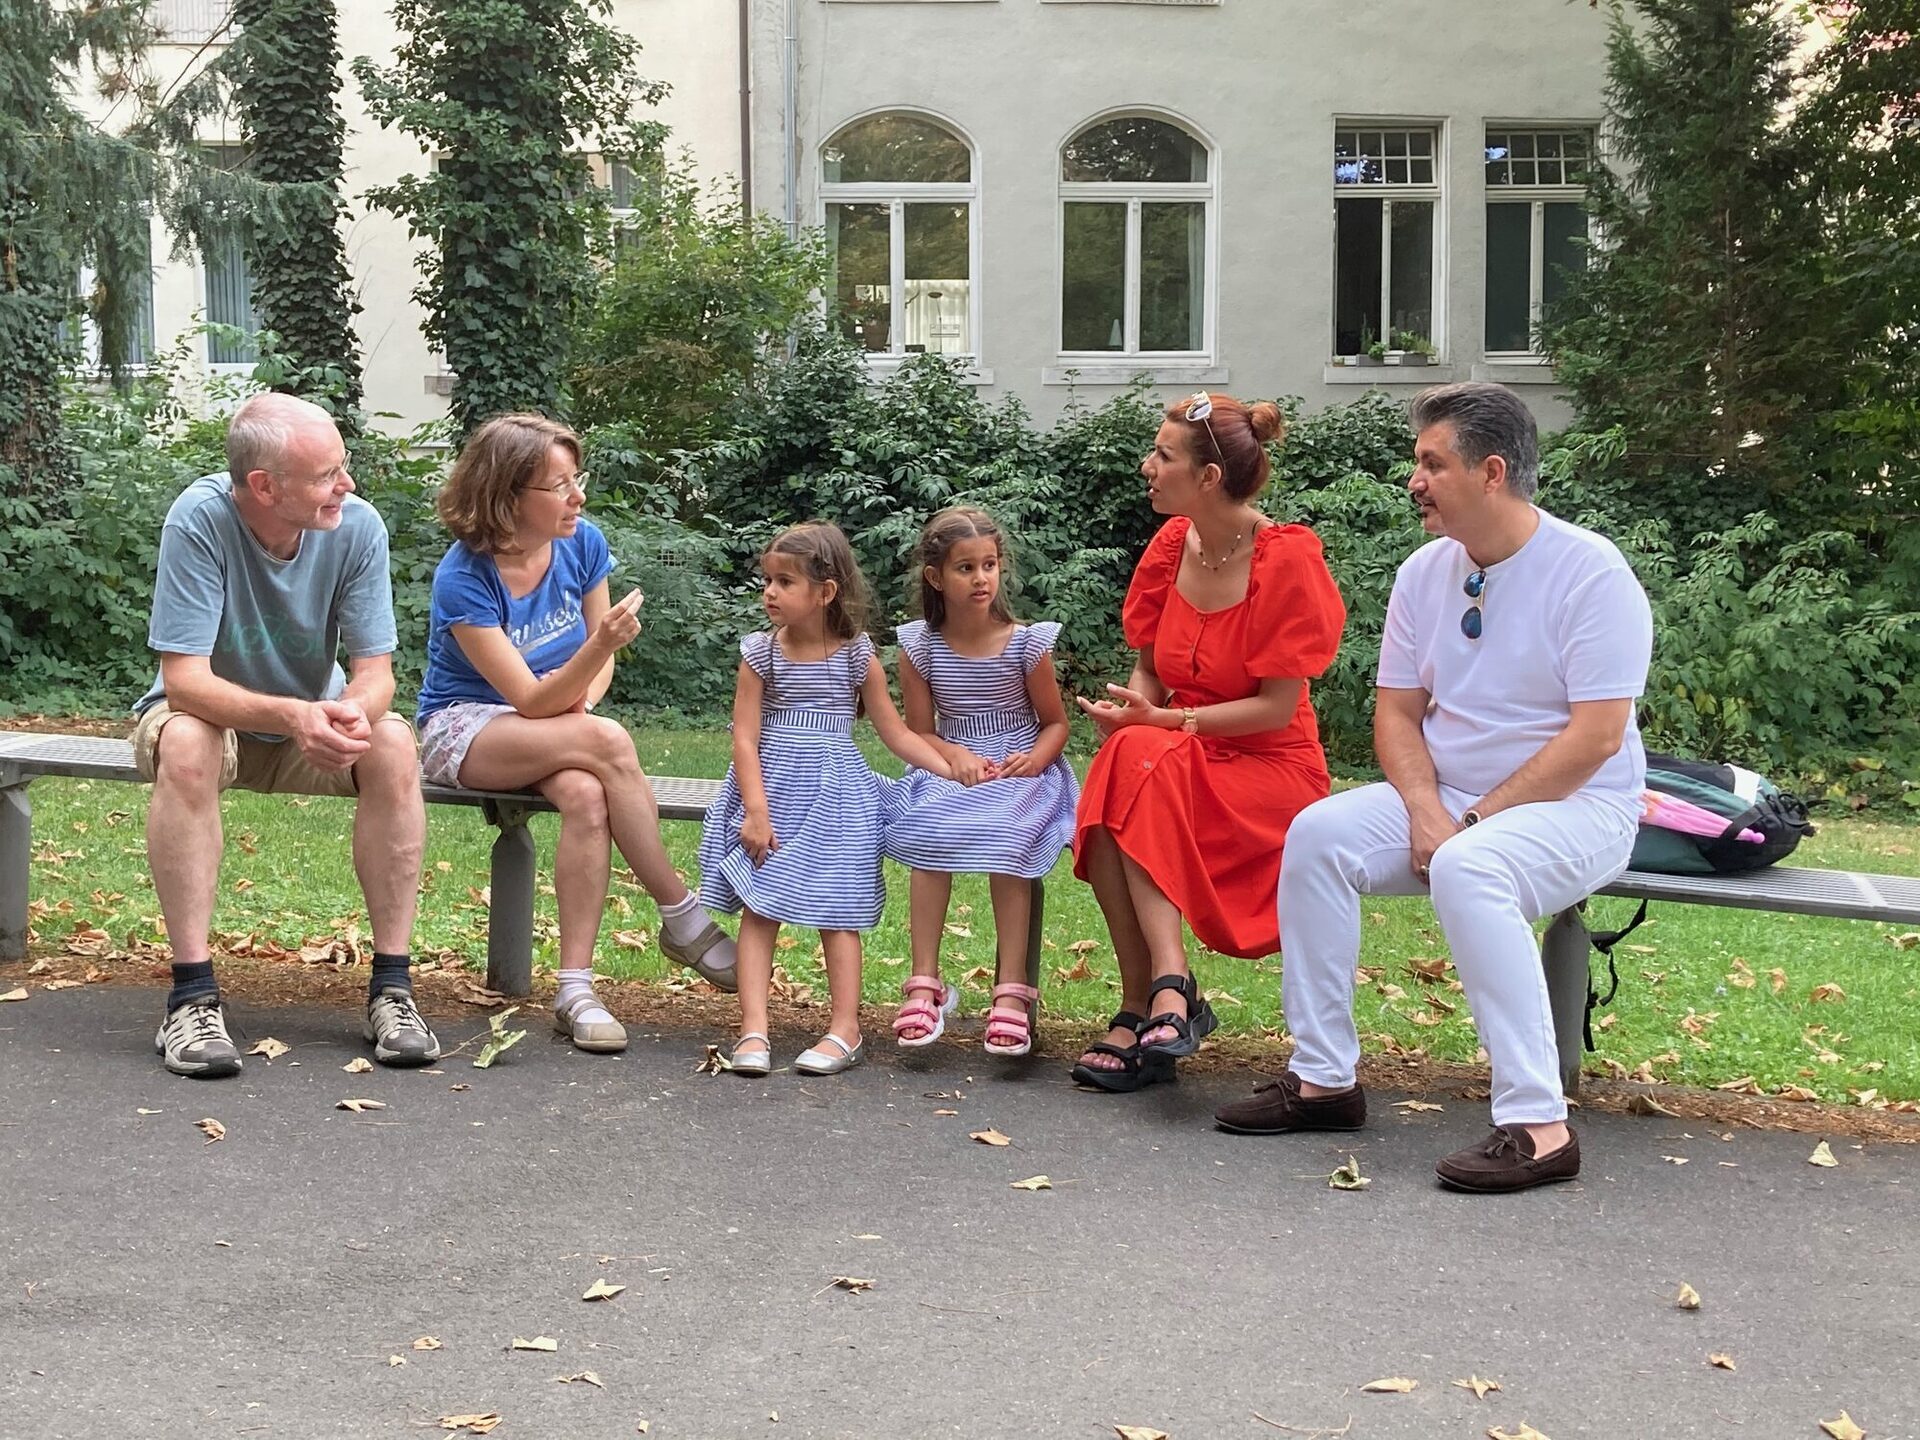 Hans Volkhardt und Ulrike Armbrust (links) trafen auf Ali Ruhmanipour und Naghmeh Alipuee mit ihren beiden Kindern Nivana und Nela.